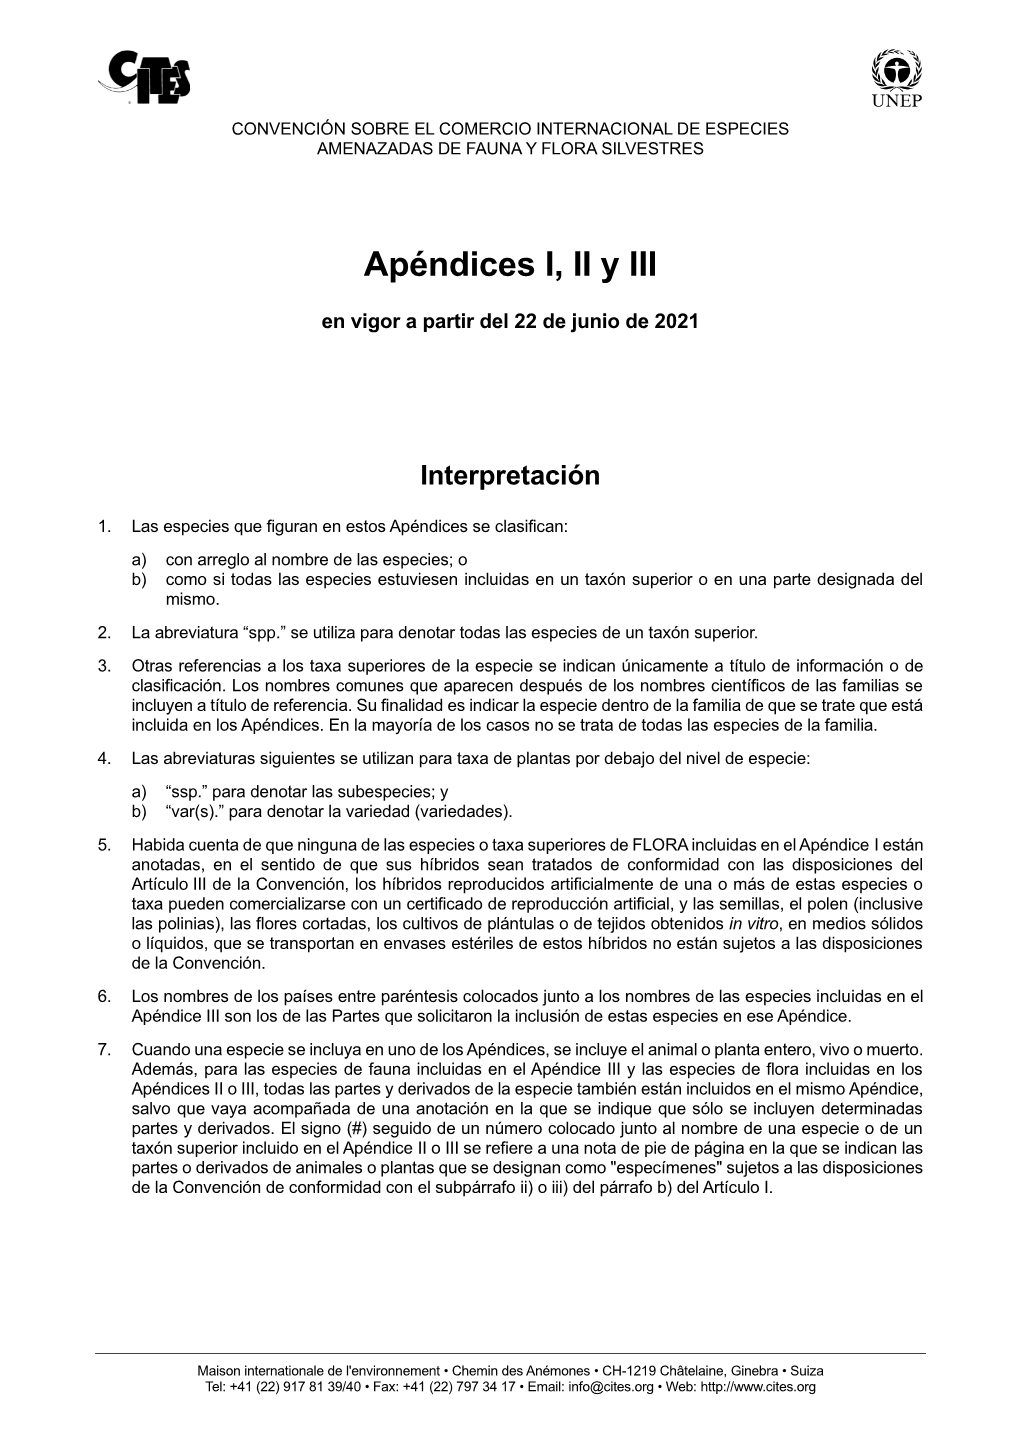 Apéndices I, II Y III De La CITES En Vigor a Partir Del 22 De Junio De 2021